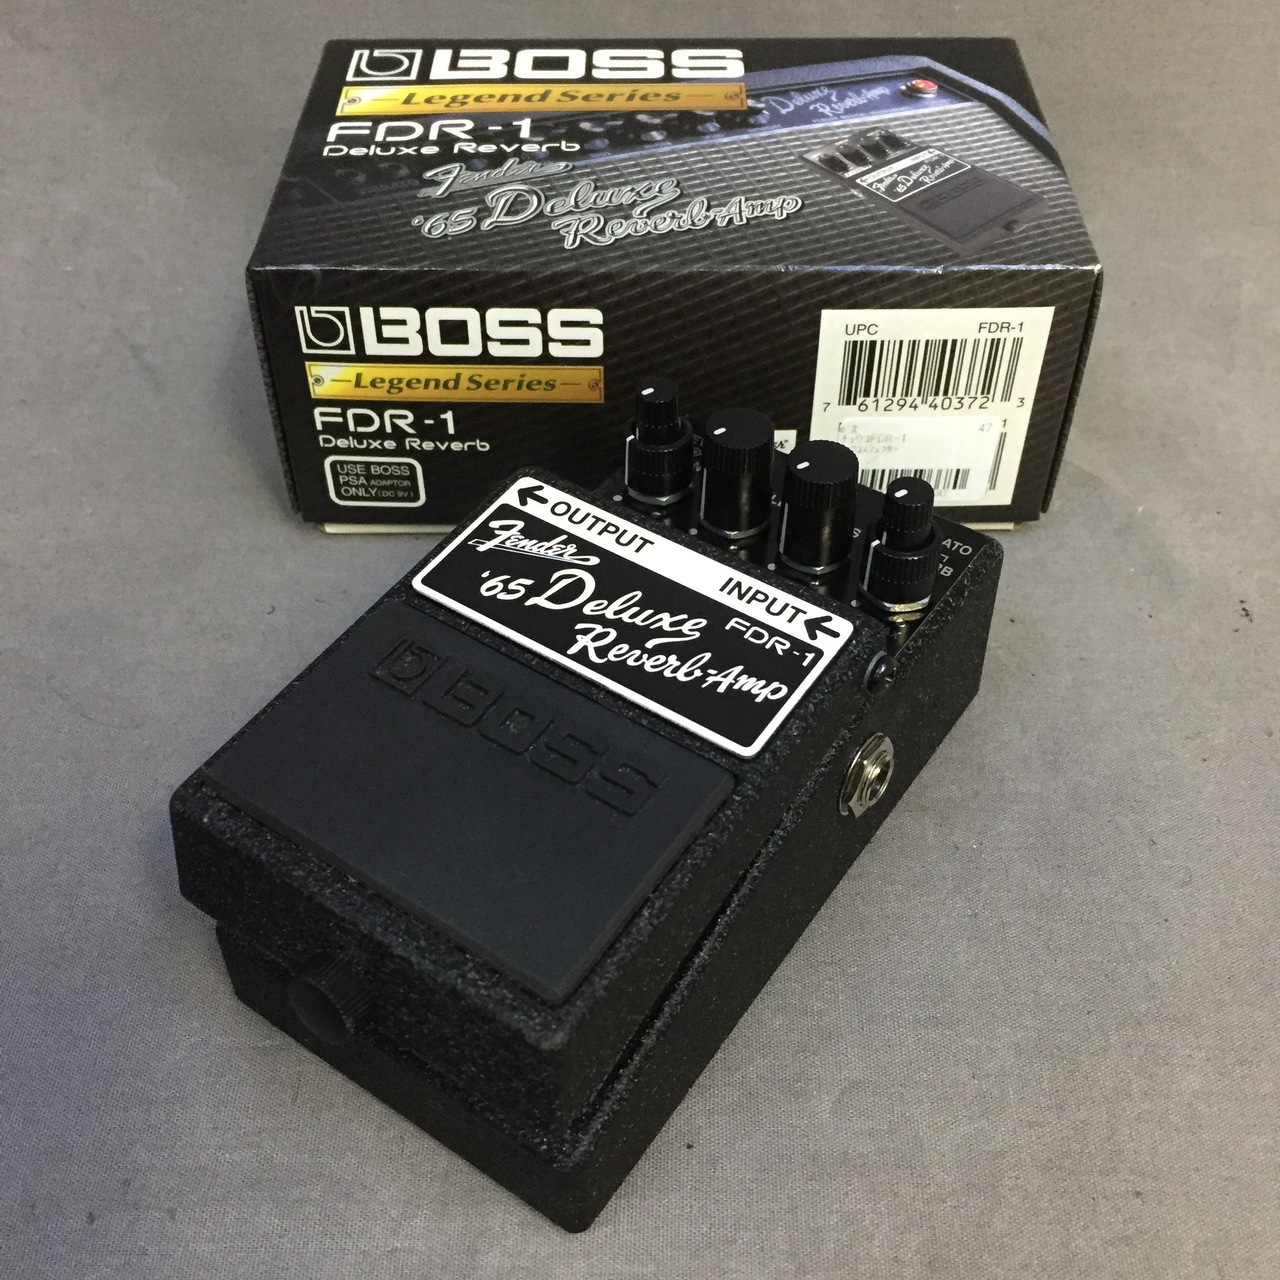 BOSS x Fender FDR-1 Deluxe Reverb